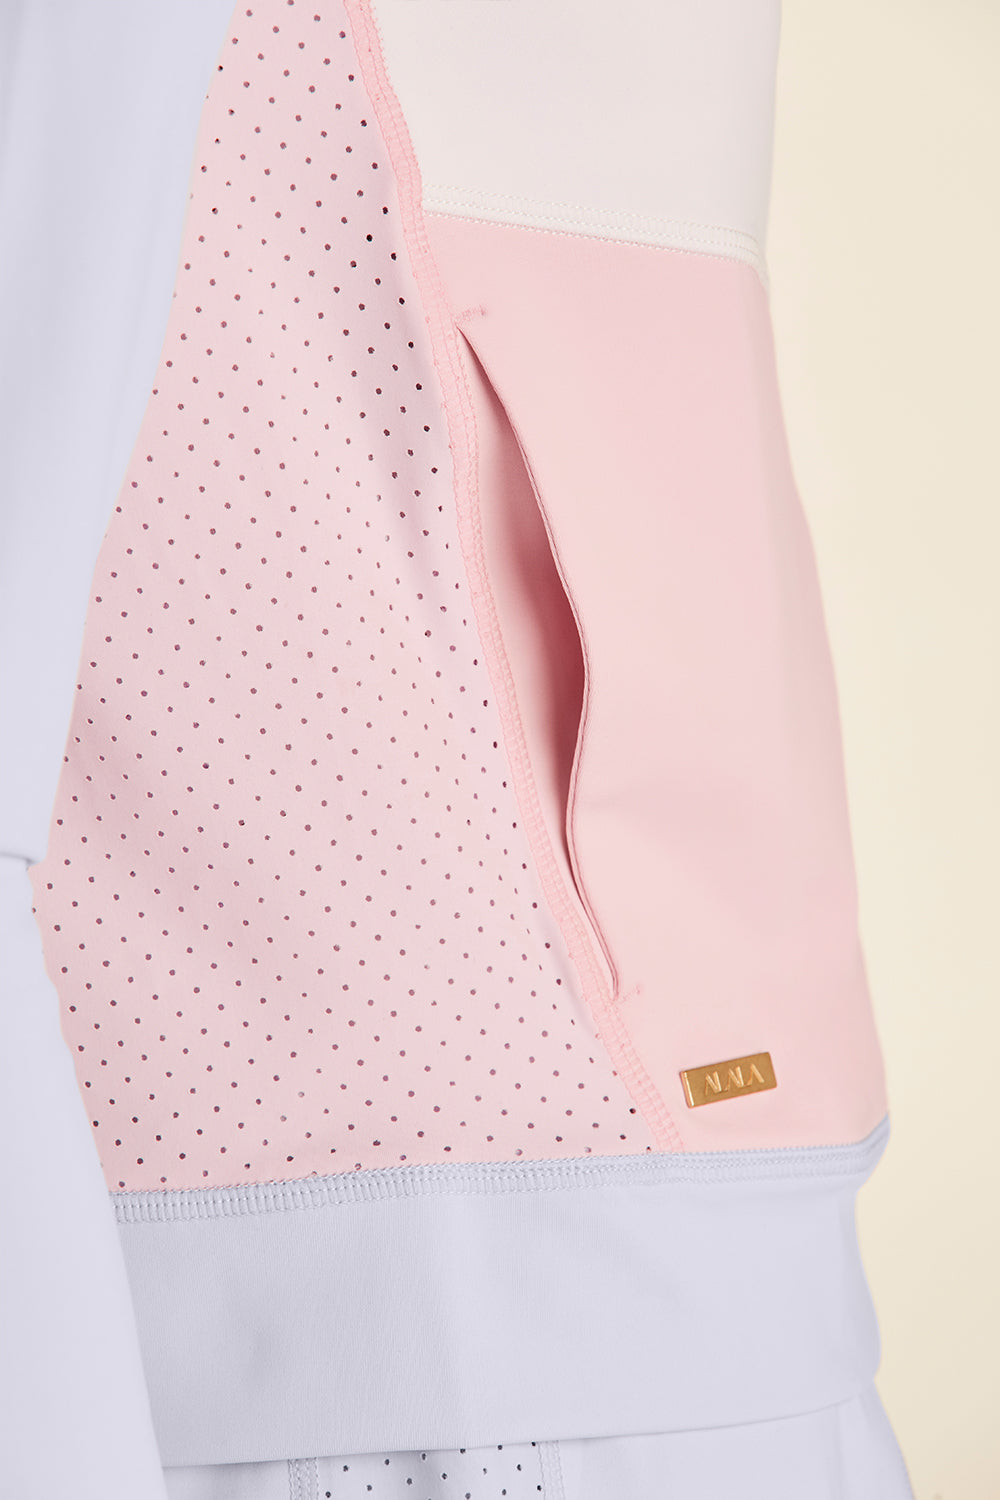 Closeup view of pink pocket of Alala Ace Jacket